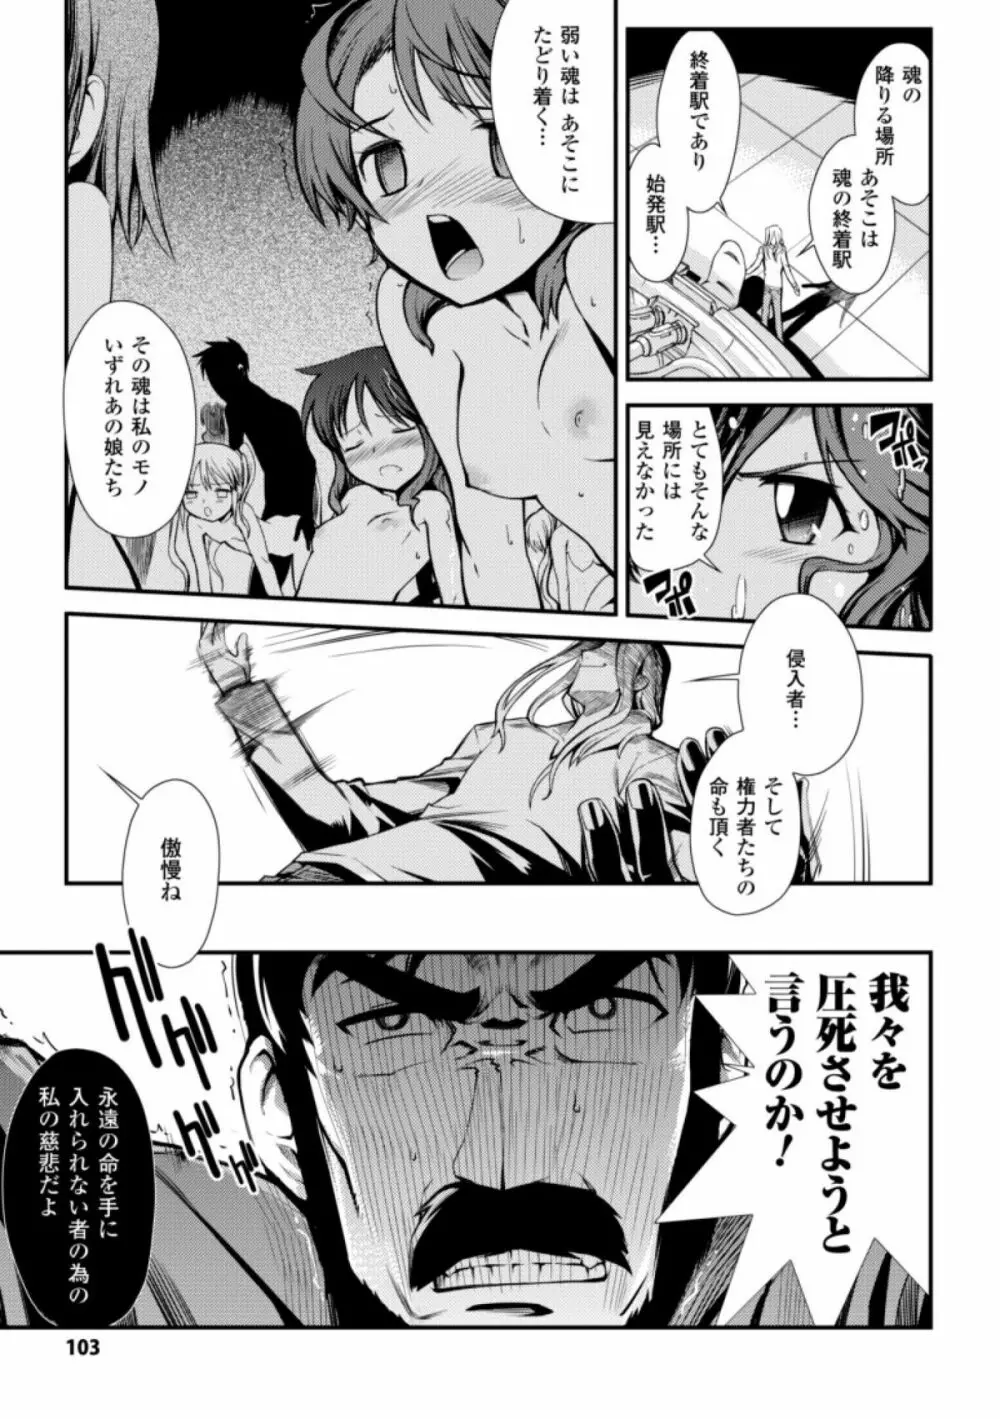 ドリームハンター麗夢XX -蒼の機関騎士- 103ページ